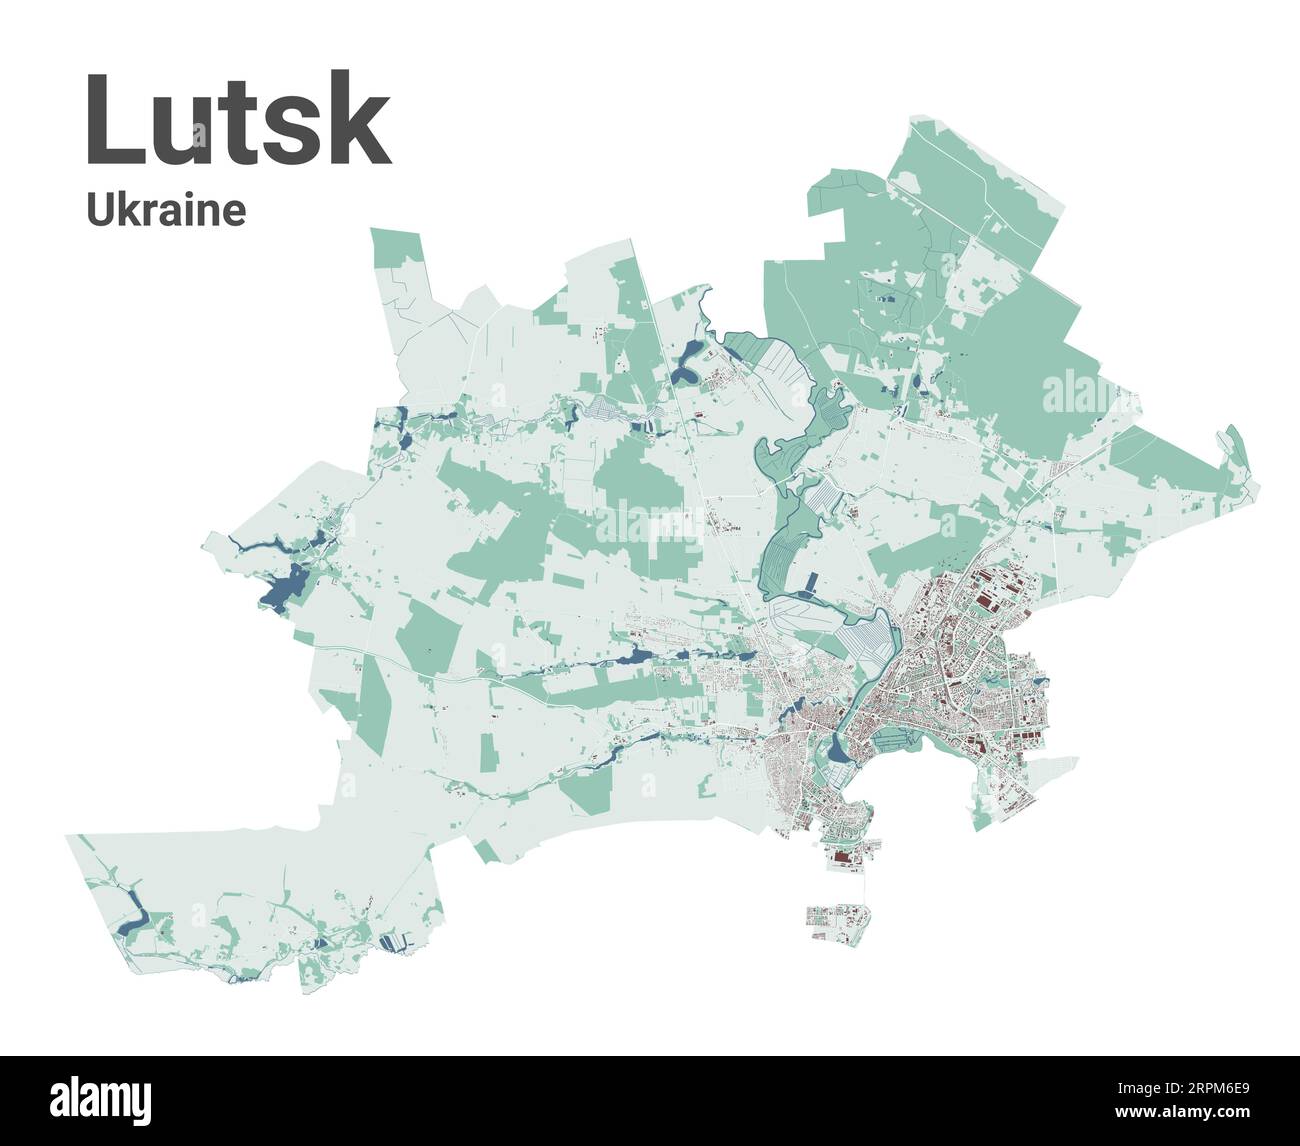 Mappa di Lutsk, città in Ucraina. Mappa dell'area amministrativa municipale con edifici, fiumi e strade, parchi e ferrovie. Illustrazione vettoriale. Illustrazione Vettoriale